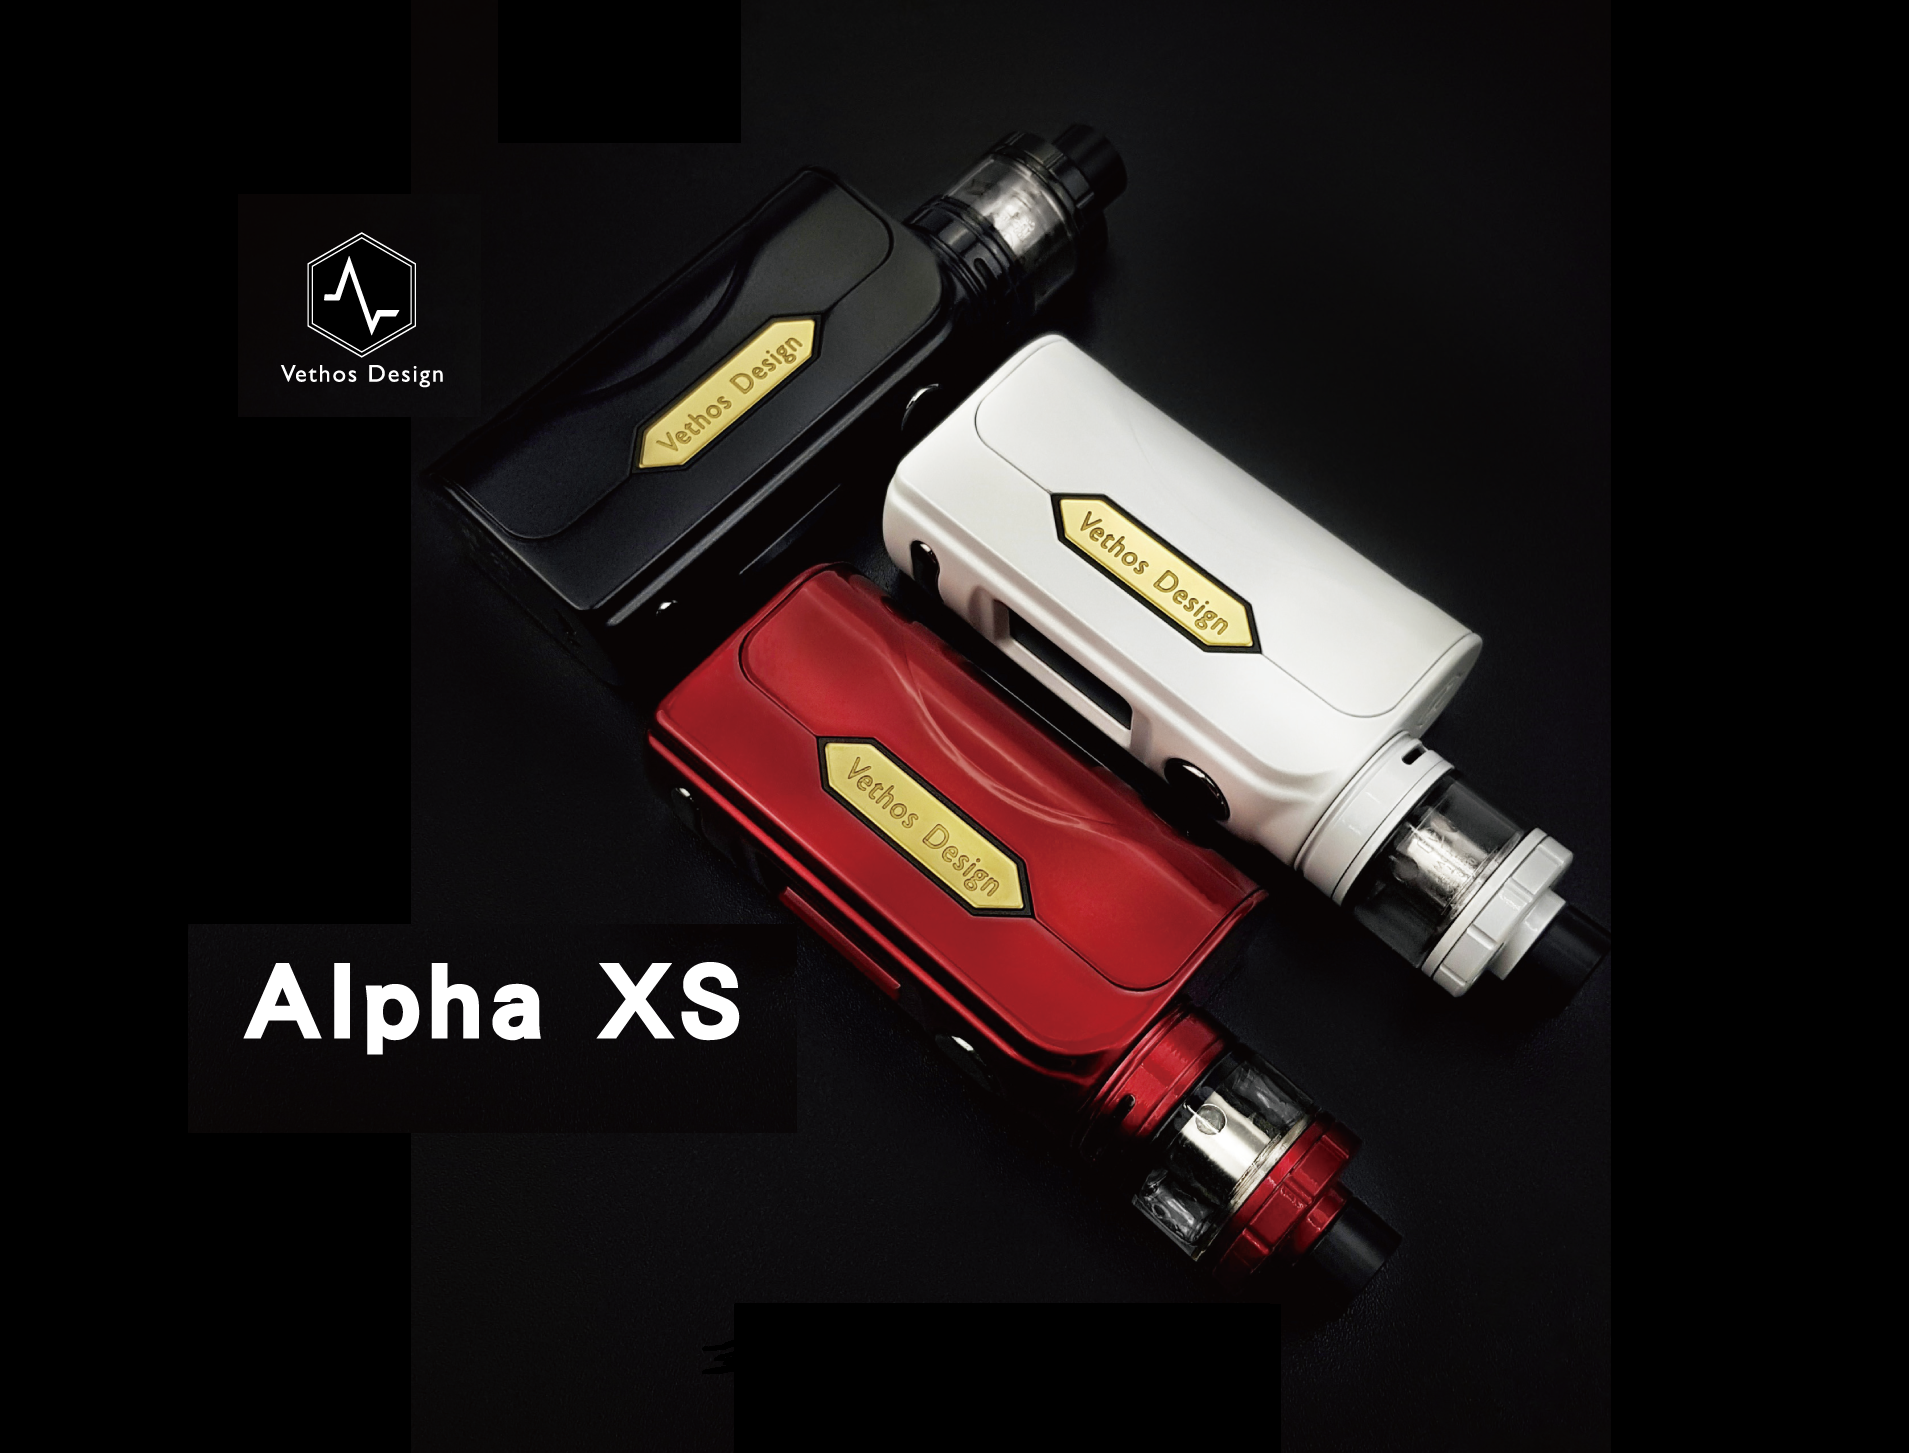 Vethos Design Alpha XS Kit - привет из страны восходящего солнца...